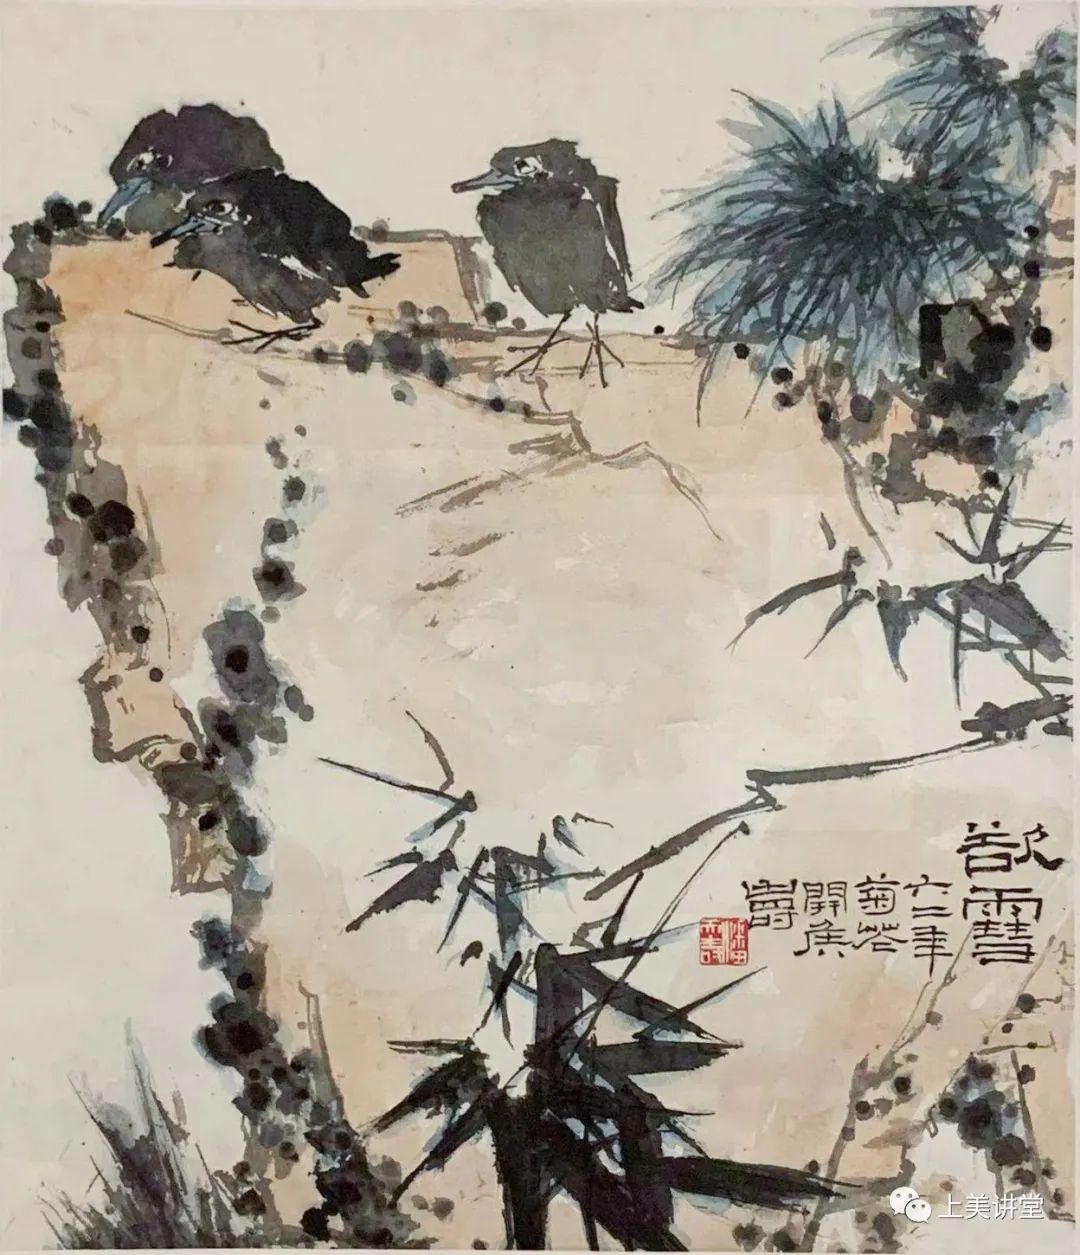 著名画家刘万鸣“意笔精微——中国绘画笔法的思考” 讲座回顾